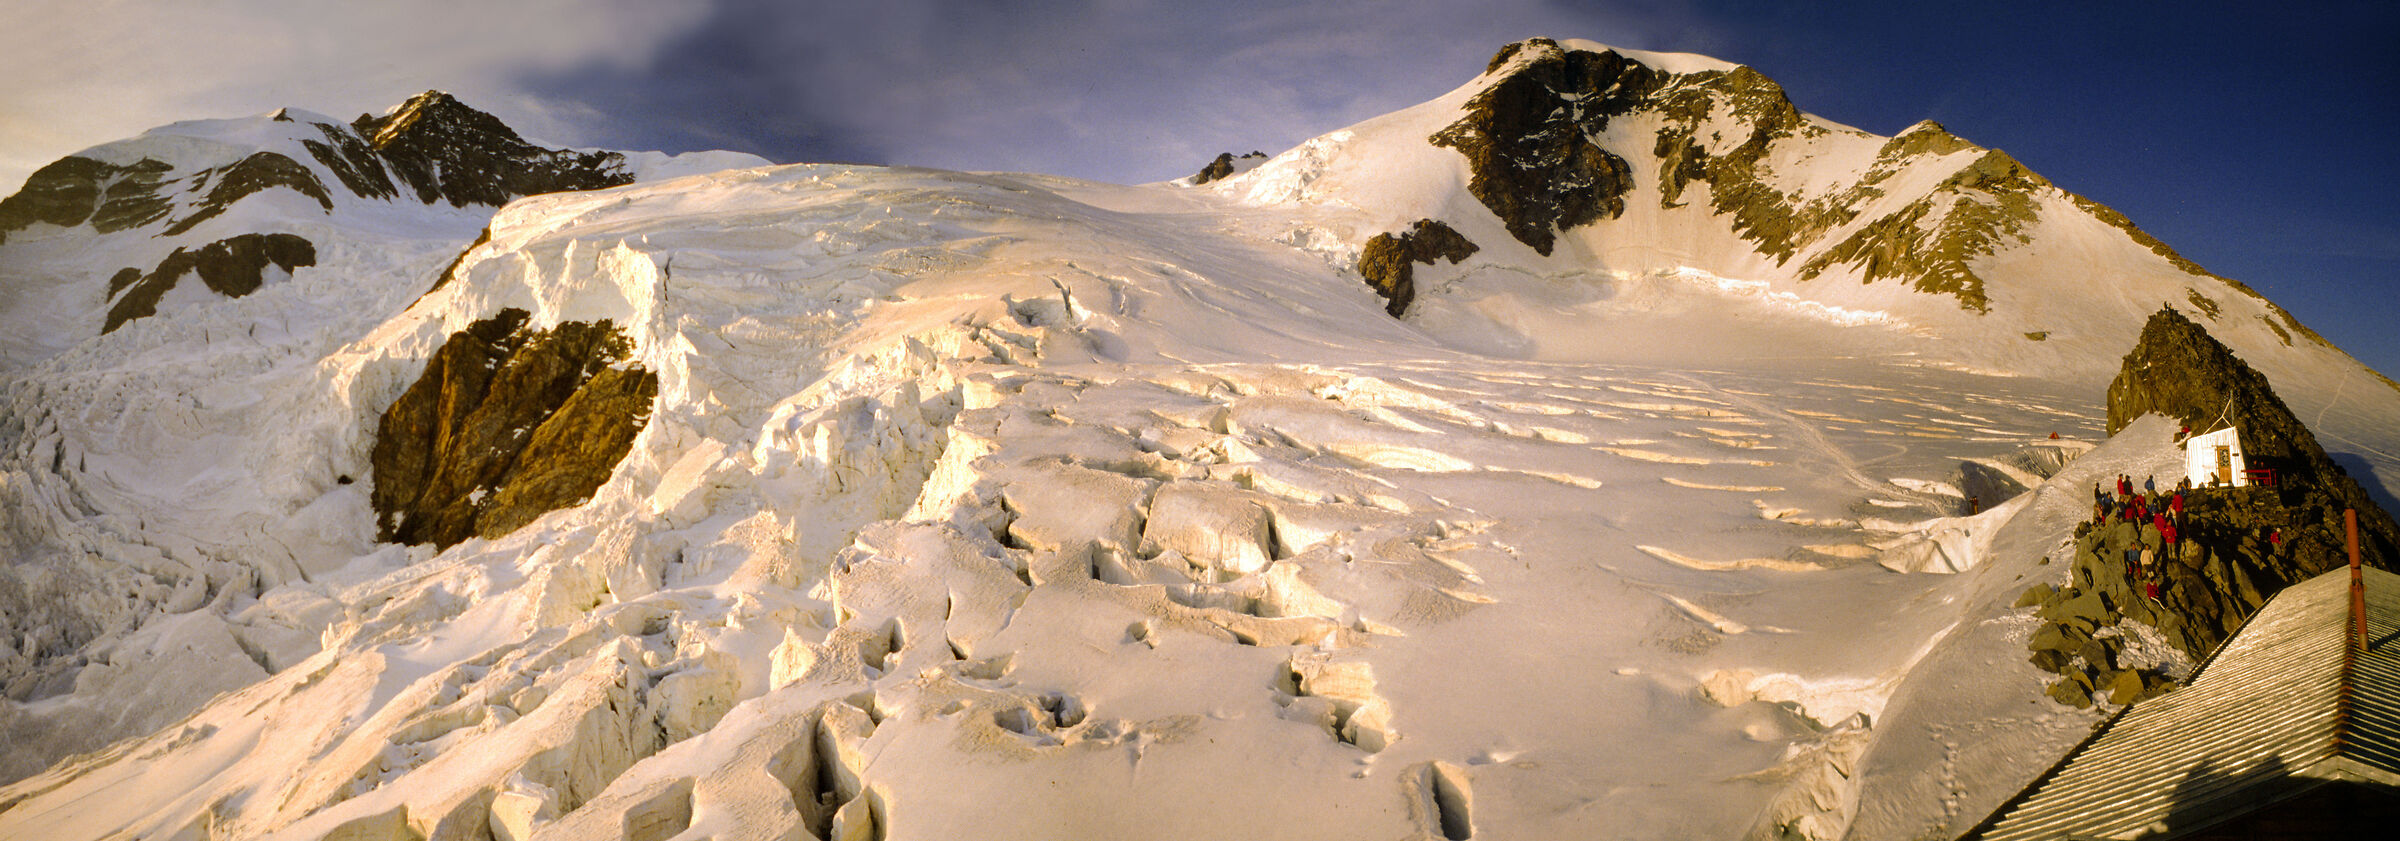 1979: The Lys Glacier...